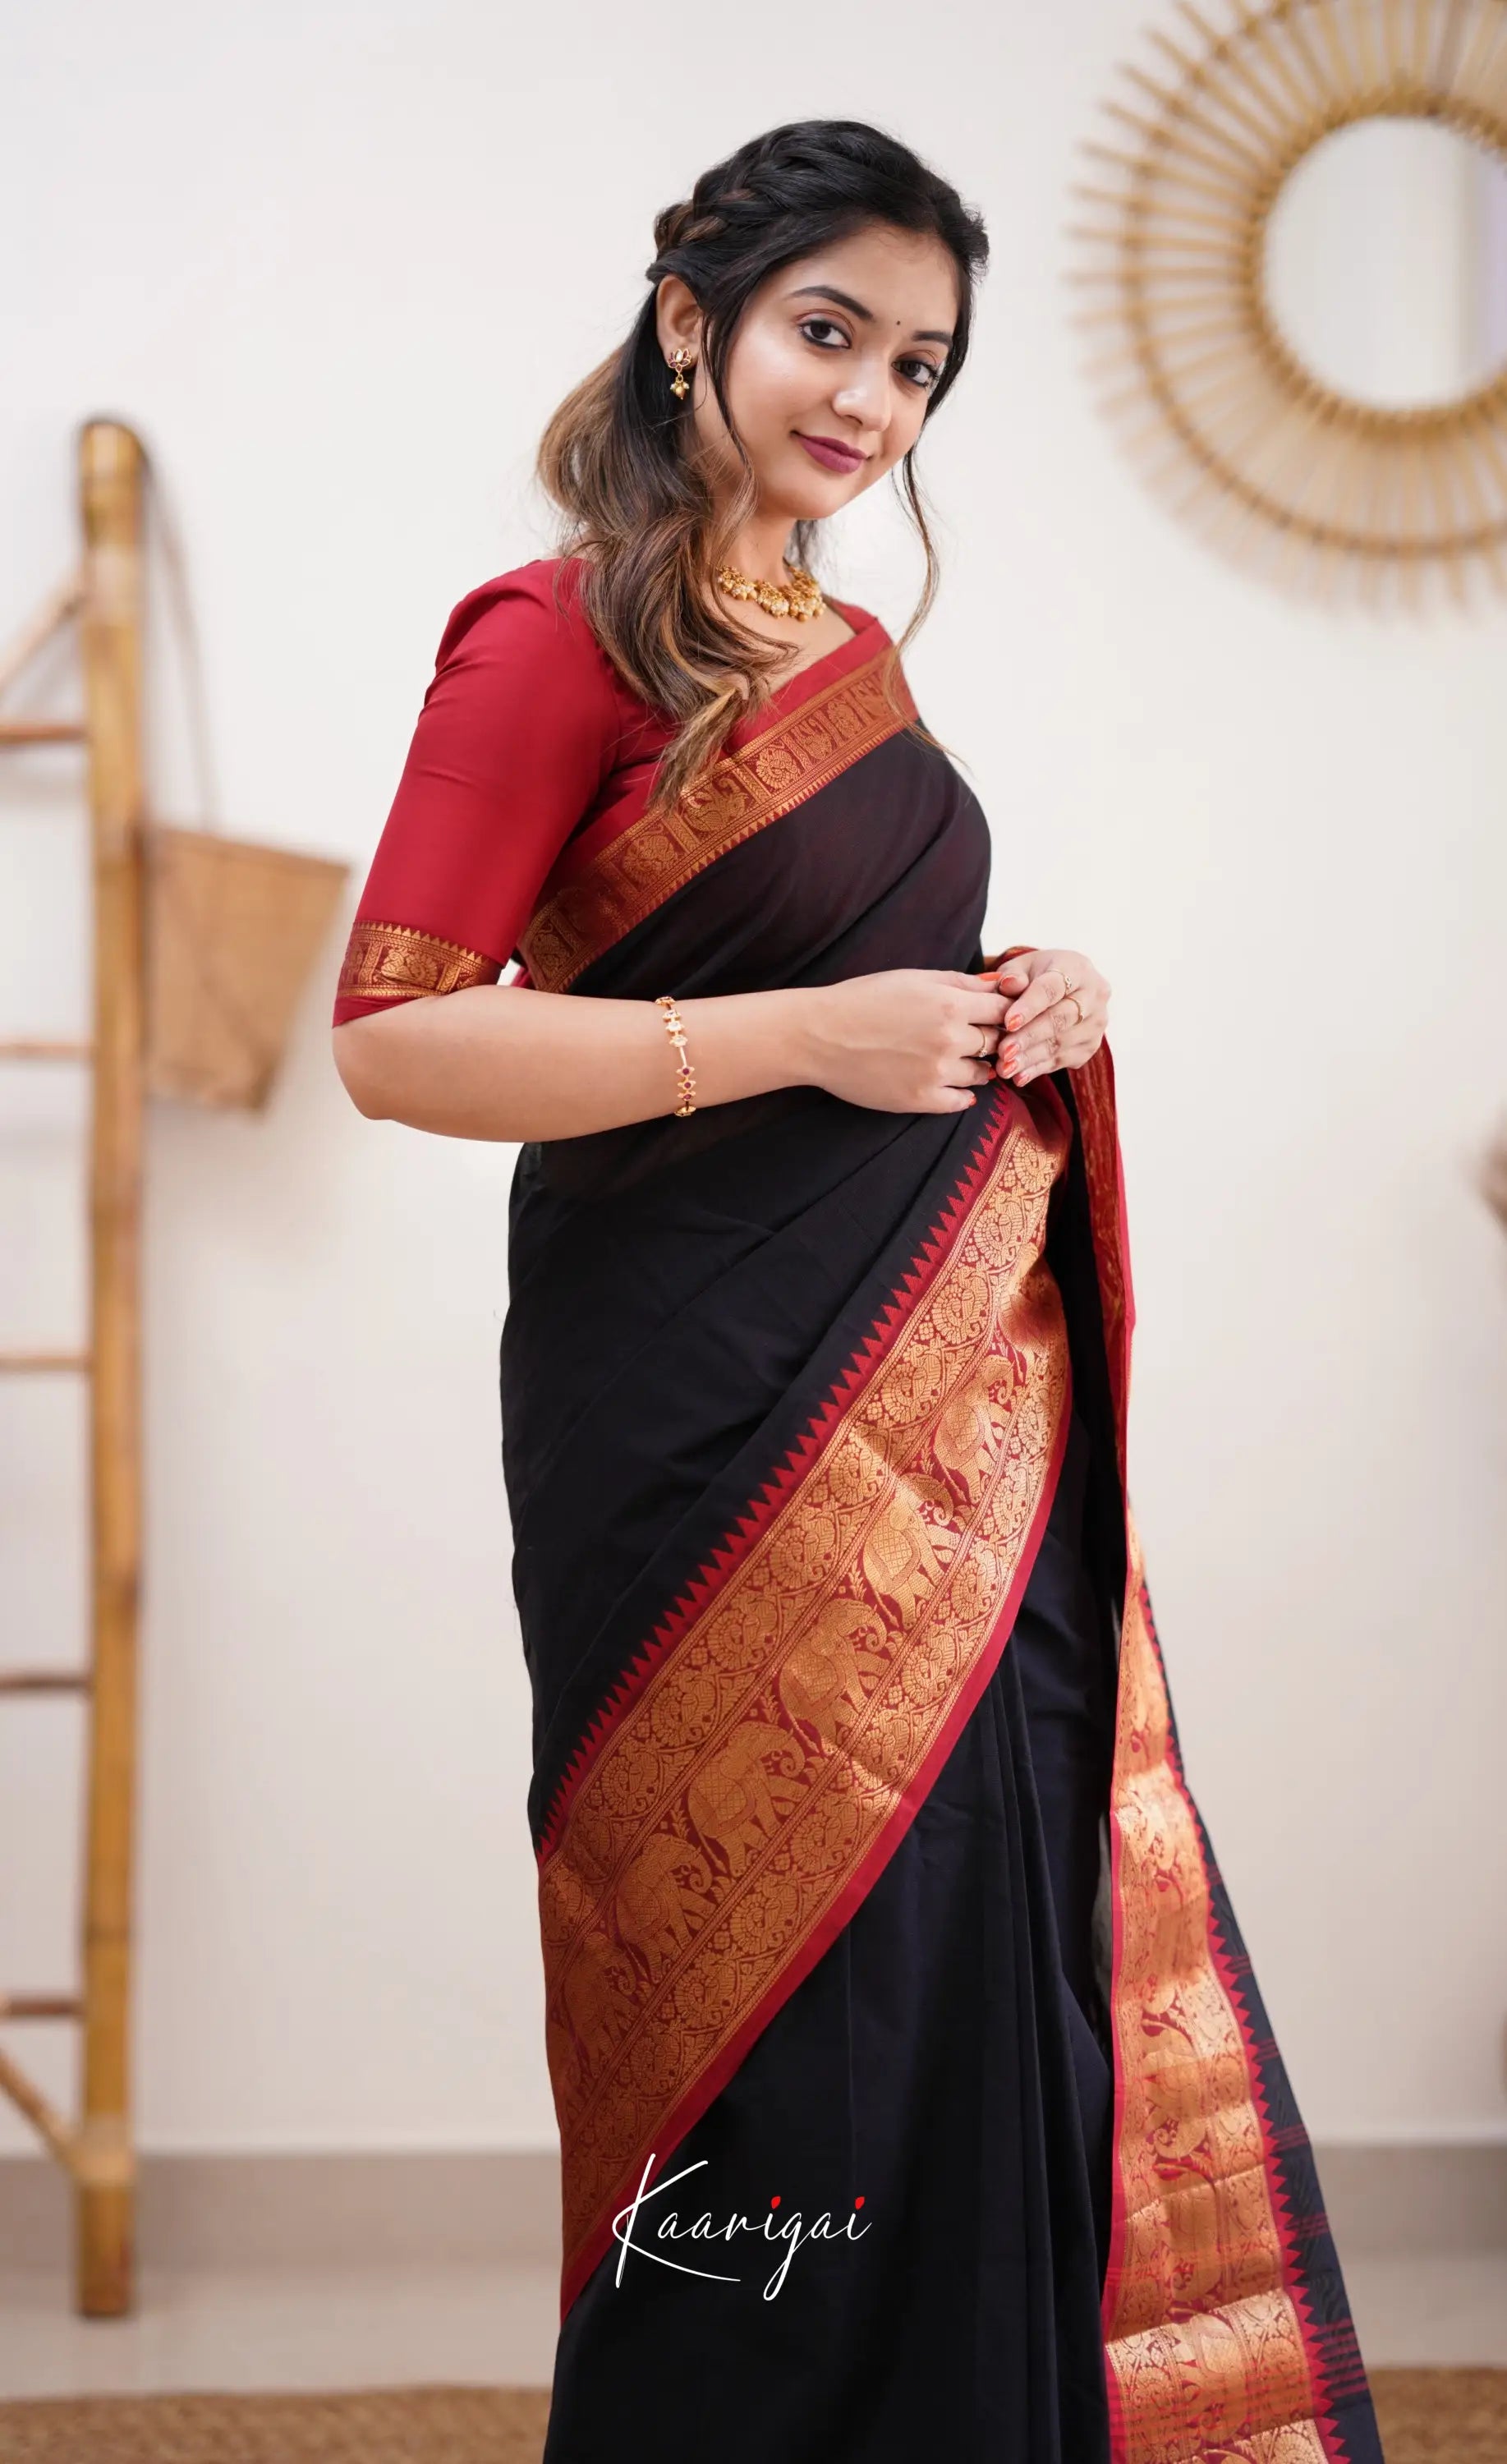 Nalinam - Red And Black Cotton Saree Sarees